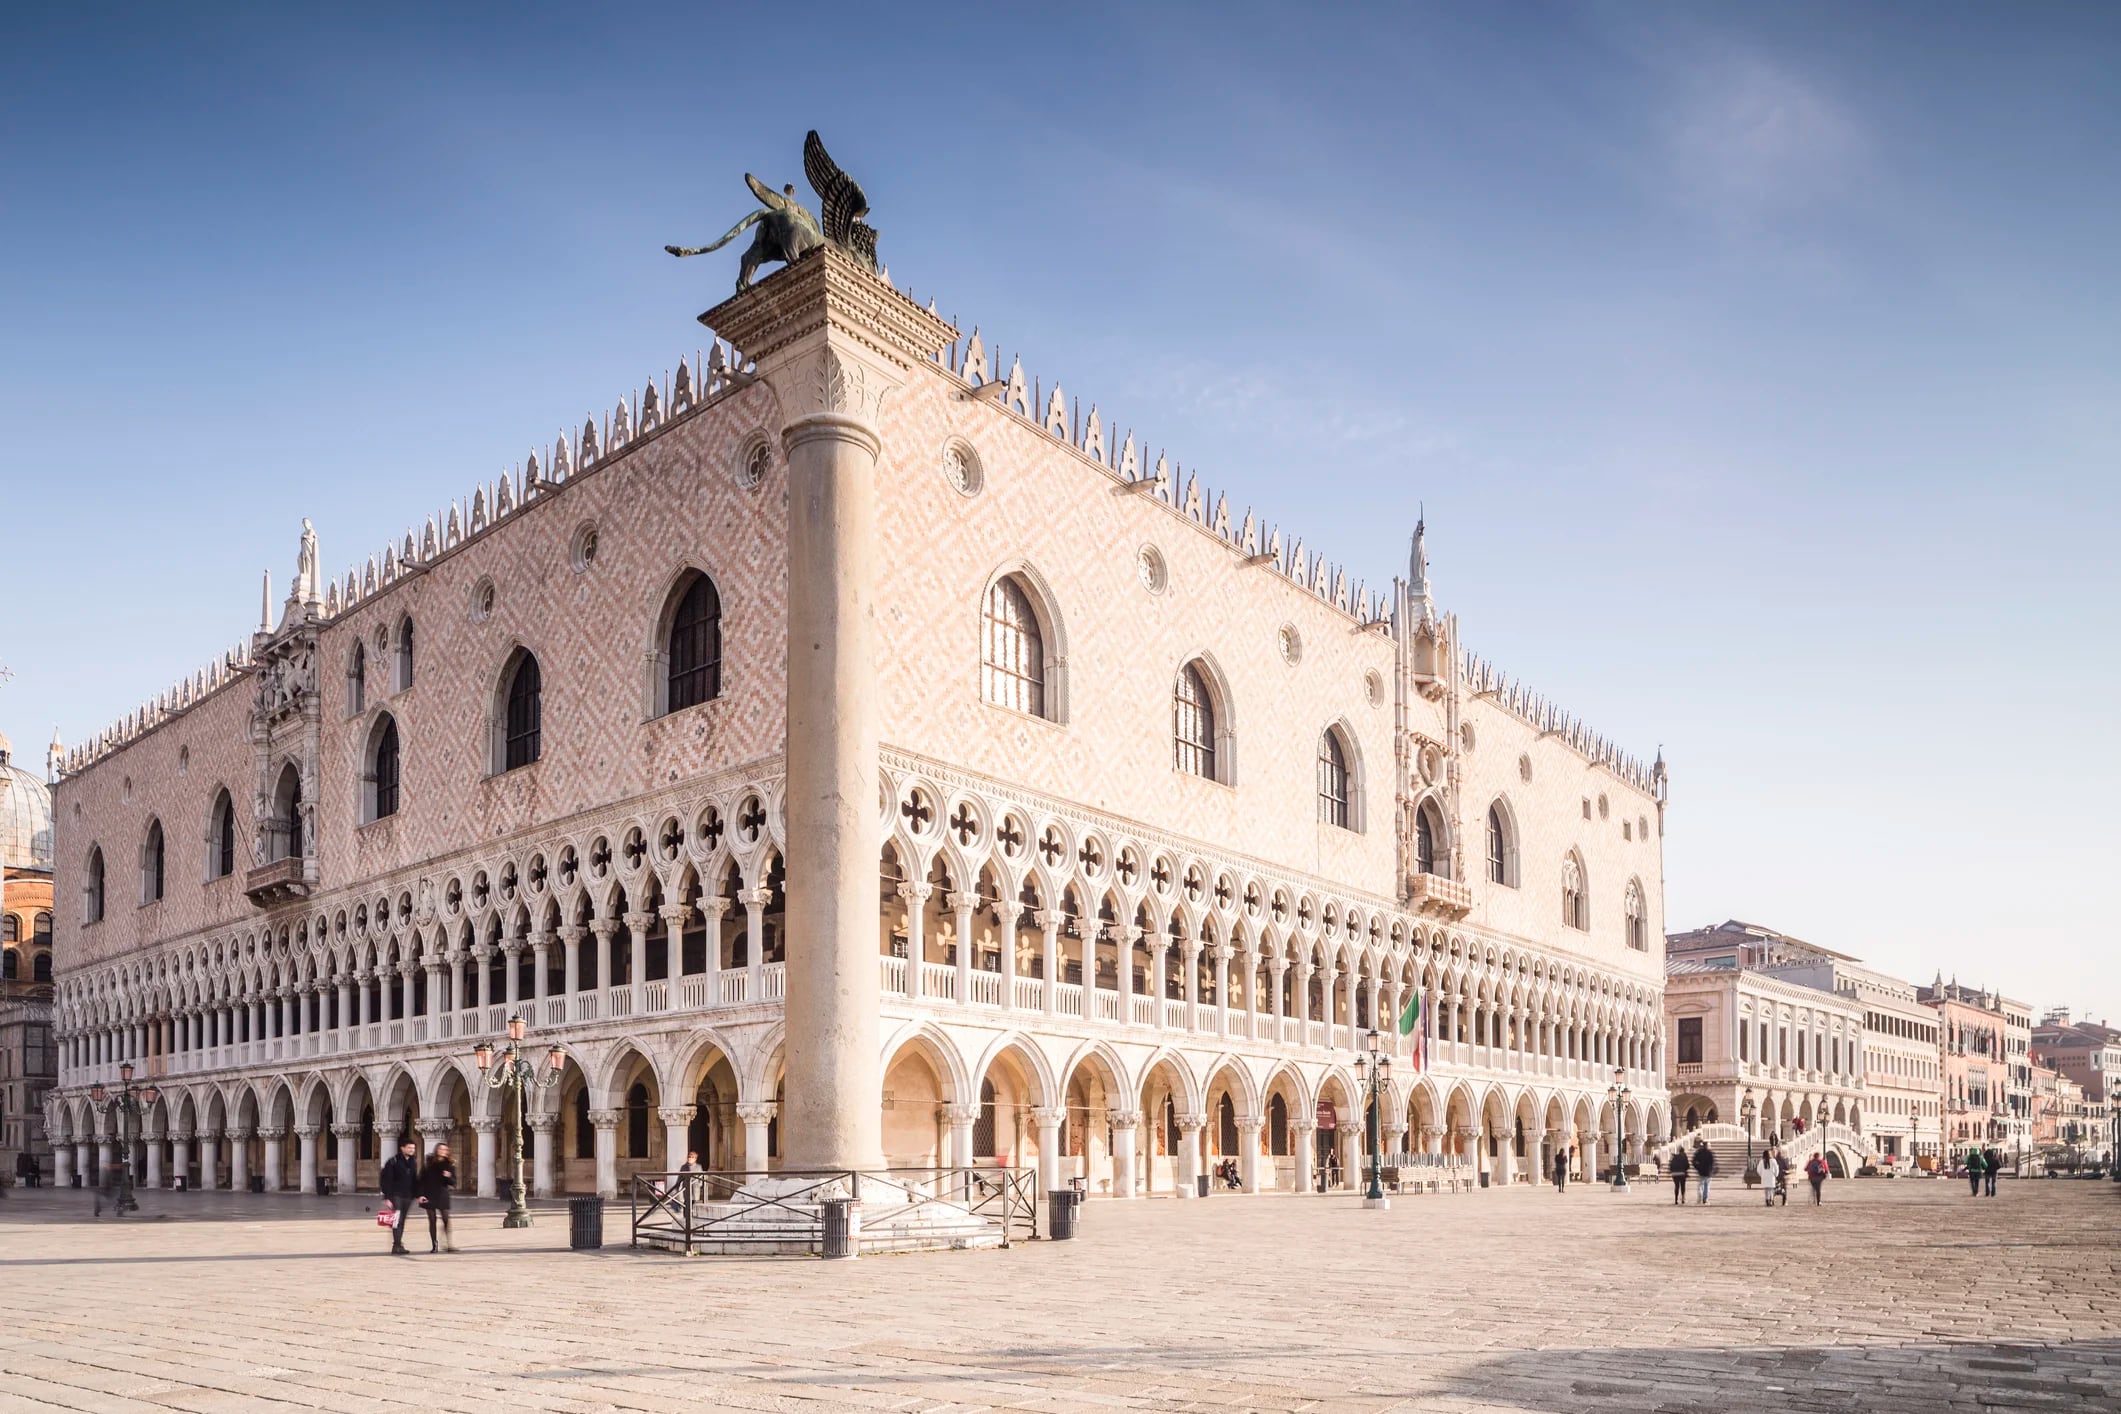 Construido en estilo gótico veneciano, el Palacio Ducal es uno de los principales hitos de la ciudad de Venecia. El palacio fue la residencia del Dux de Venecia, la autoridad suprema de la antigua República de Venecia, y se inauguró como museo en 1923